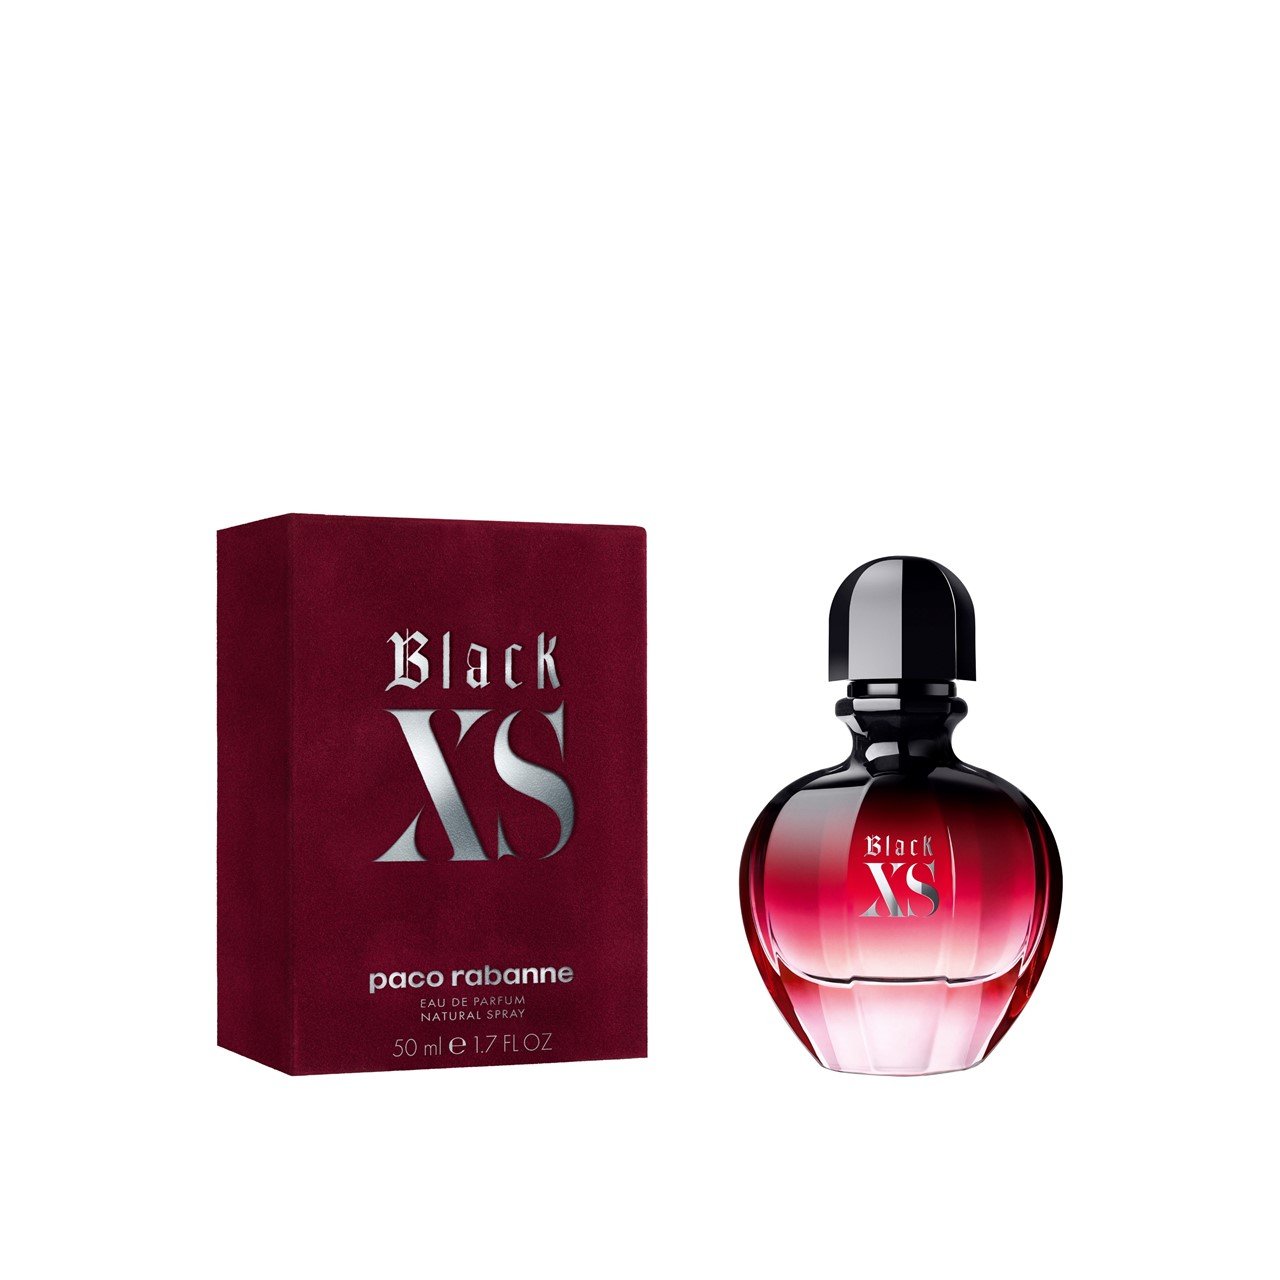 Paco Rabanne Black XS For Women Eau de Parfum 50ml (1.7fl oz)